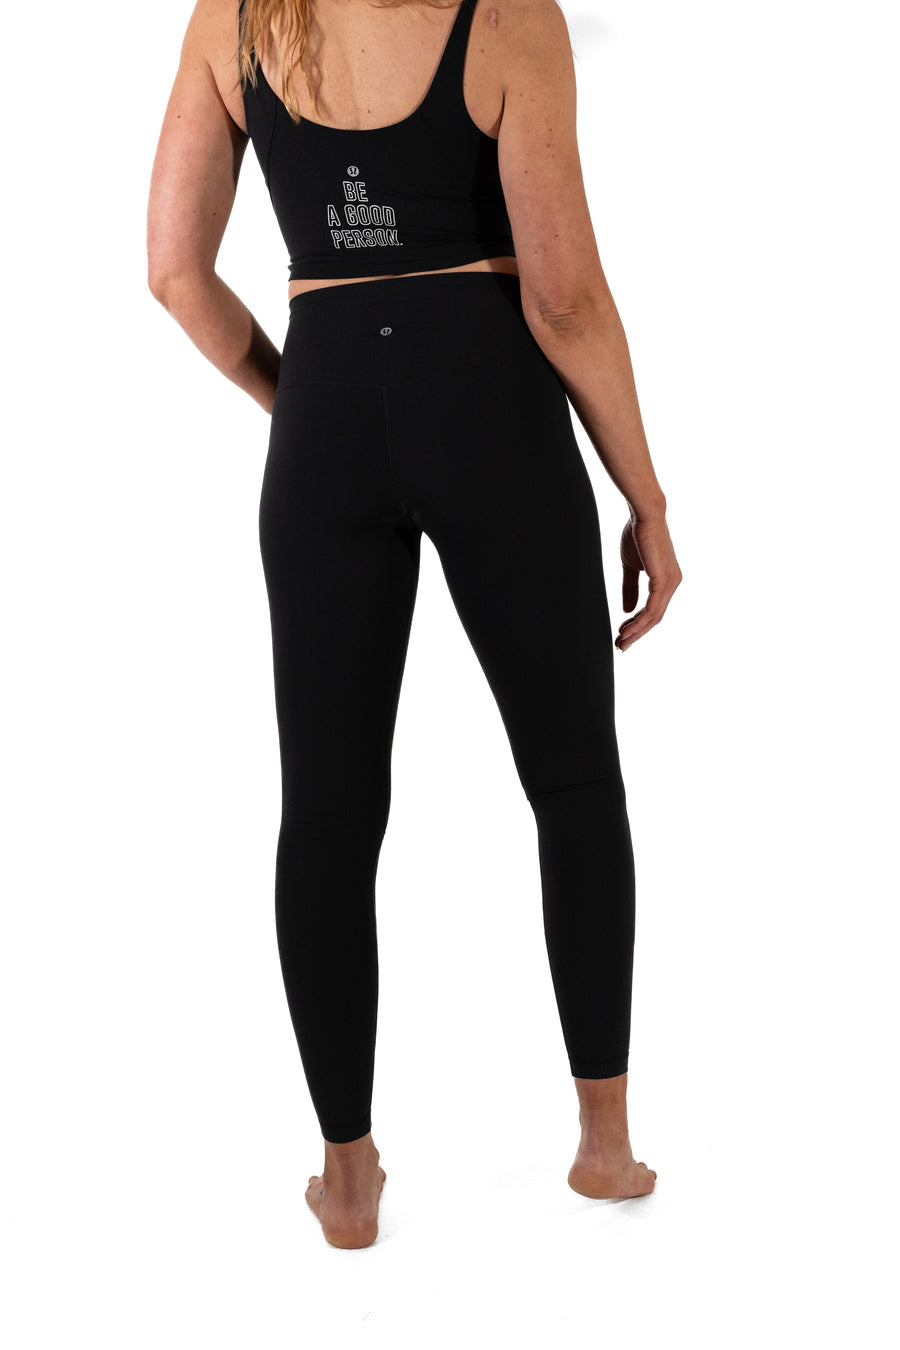 Stylish Lululemon Align Pant 28 for Active Women